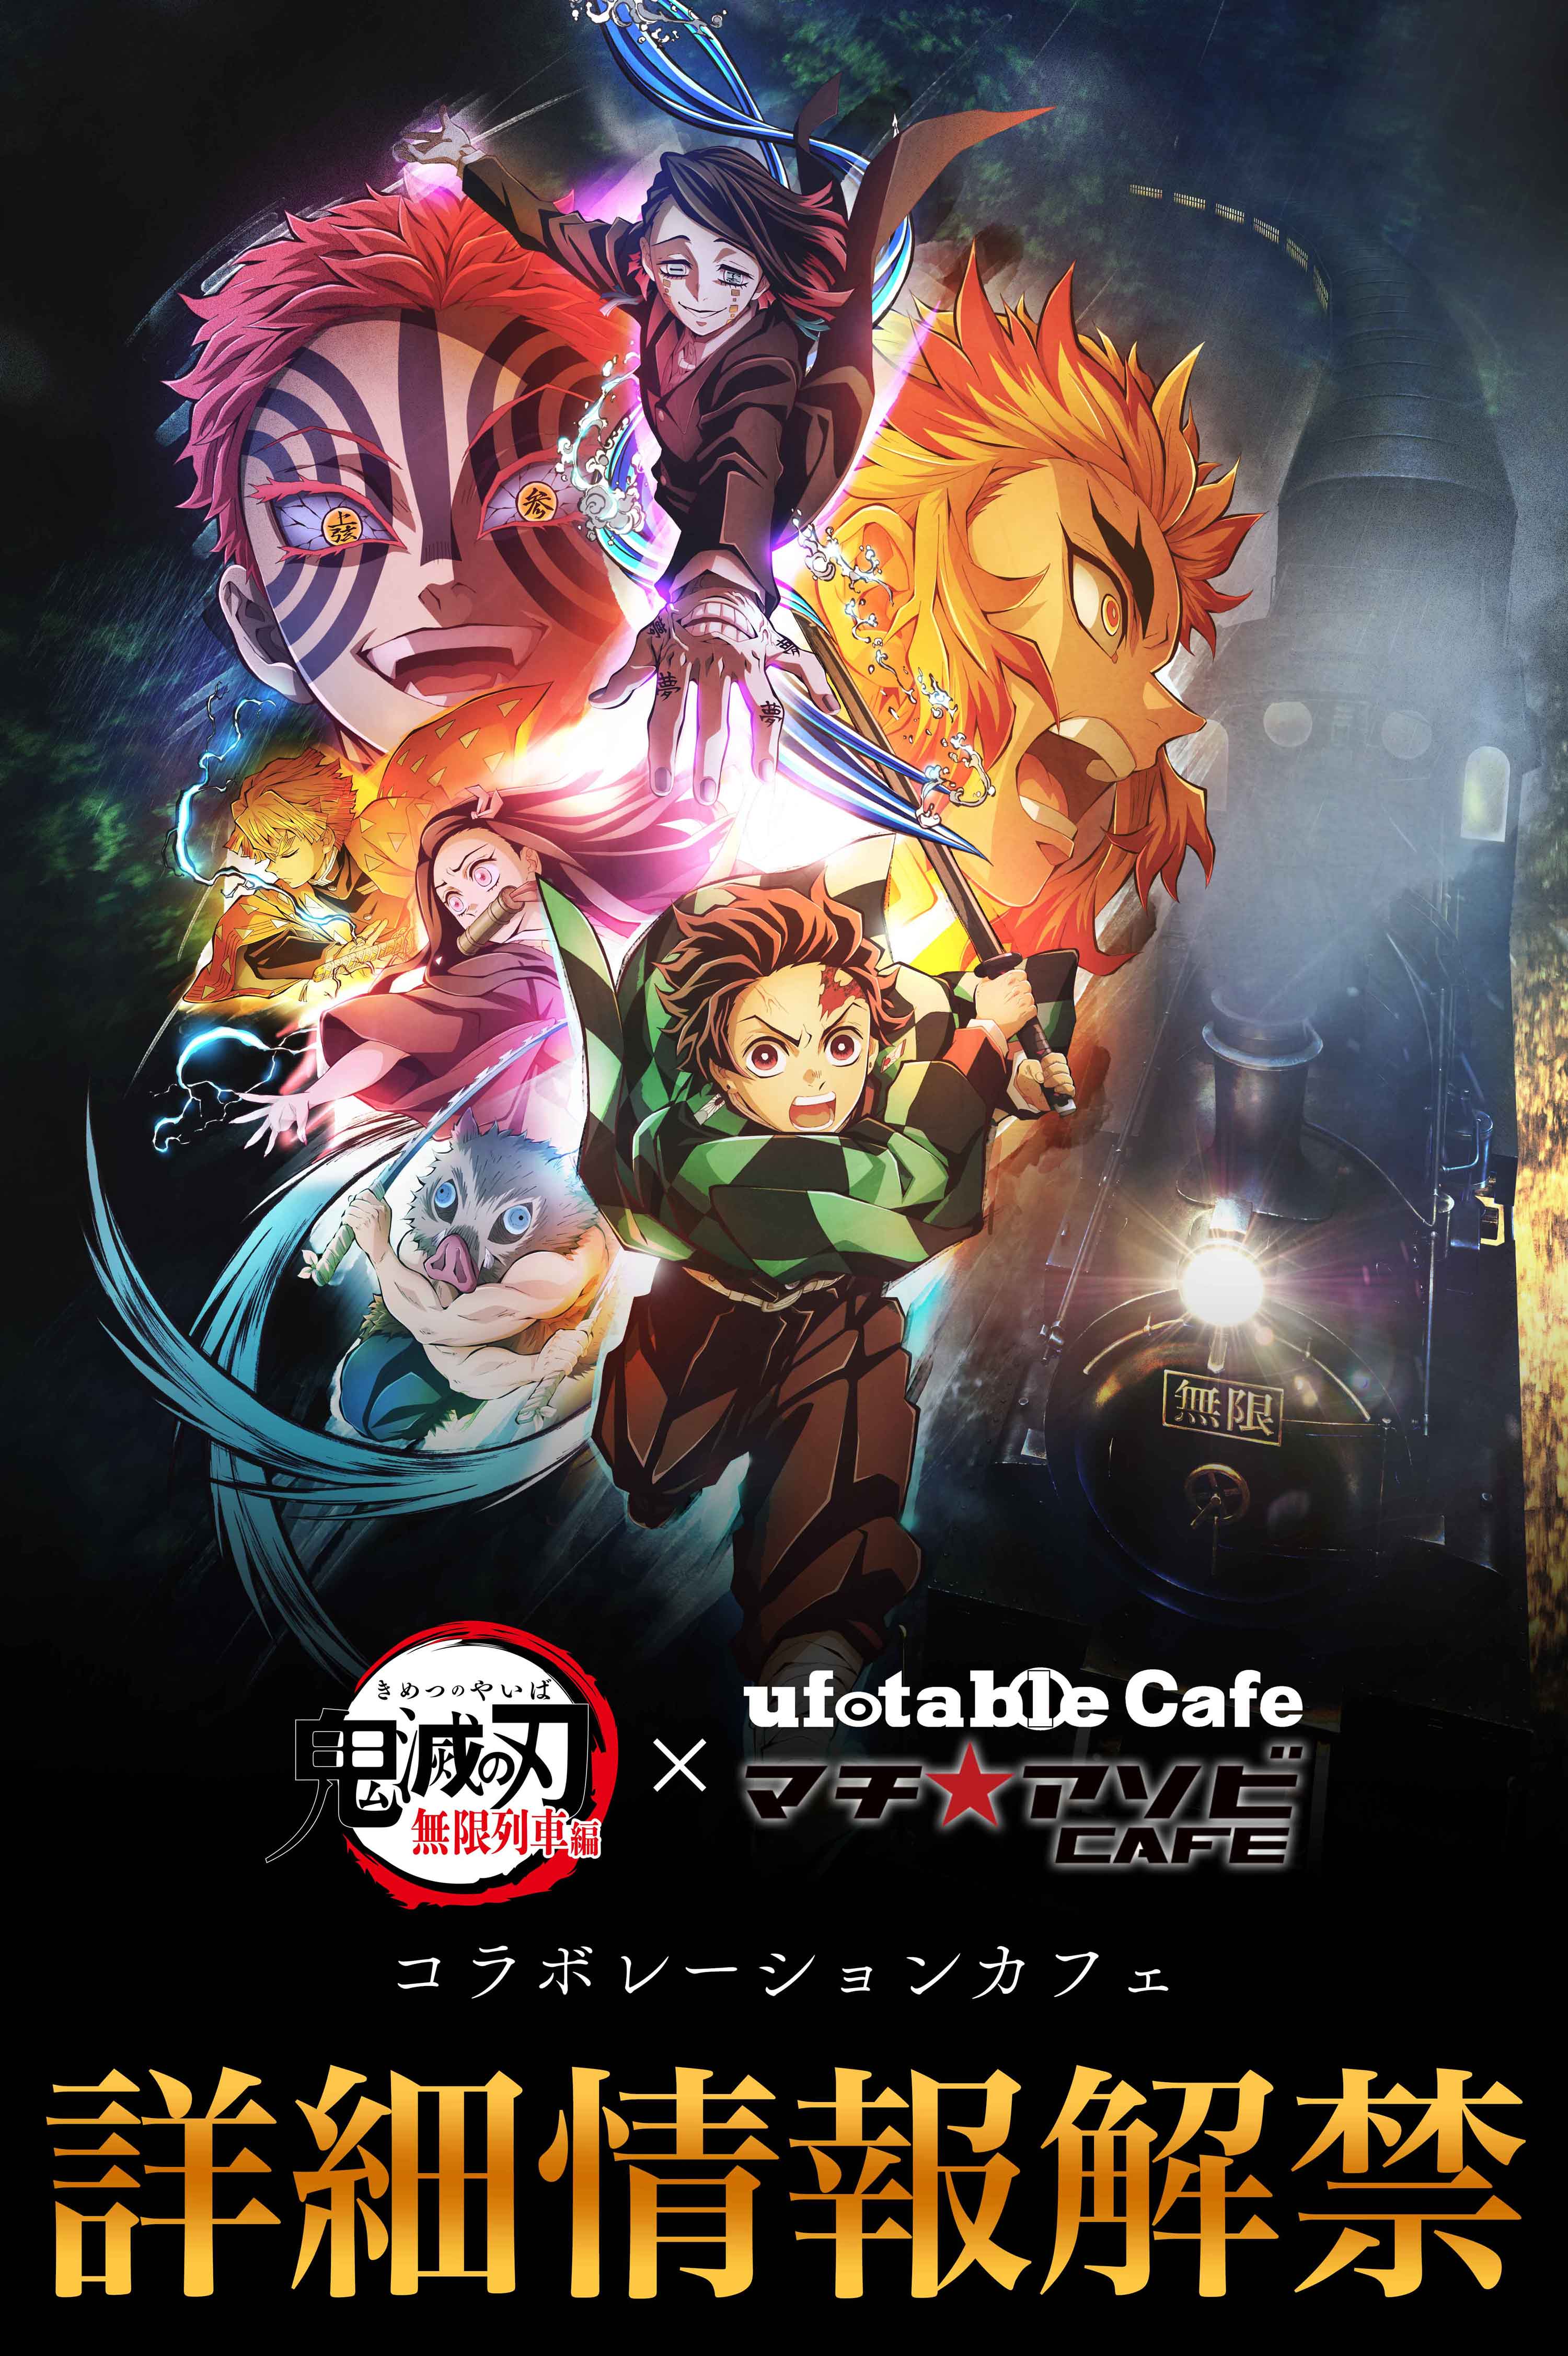 【東京】ufotableCafeTOKYO 11/17(水)  テレビアニメ「鬼滅の刃」無限列車編 コラボレーションカフェ